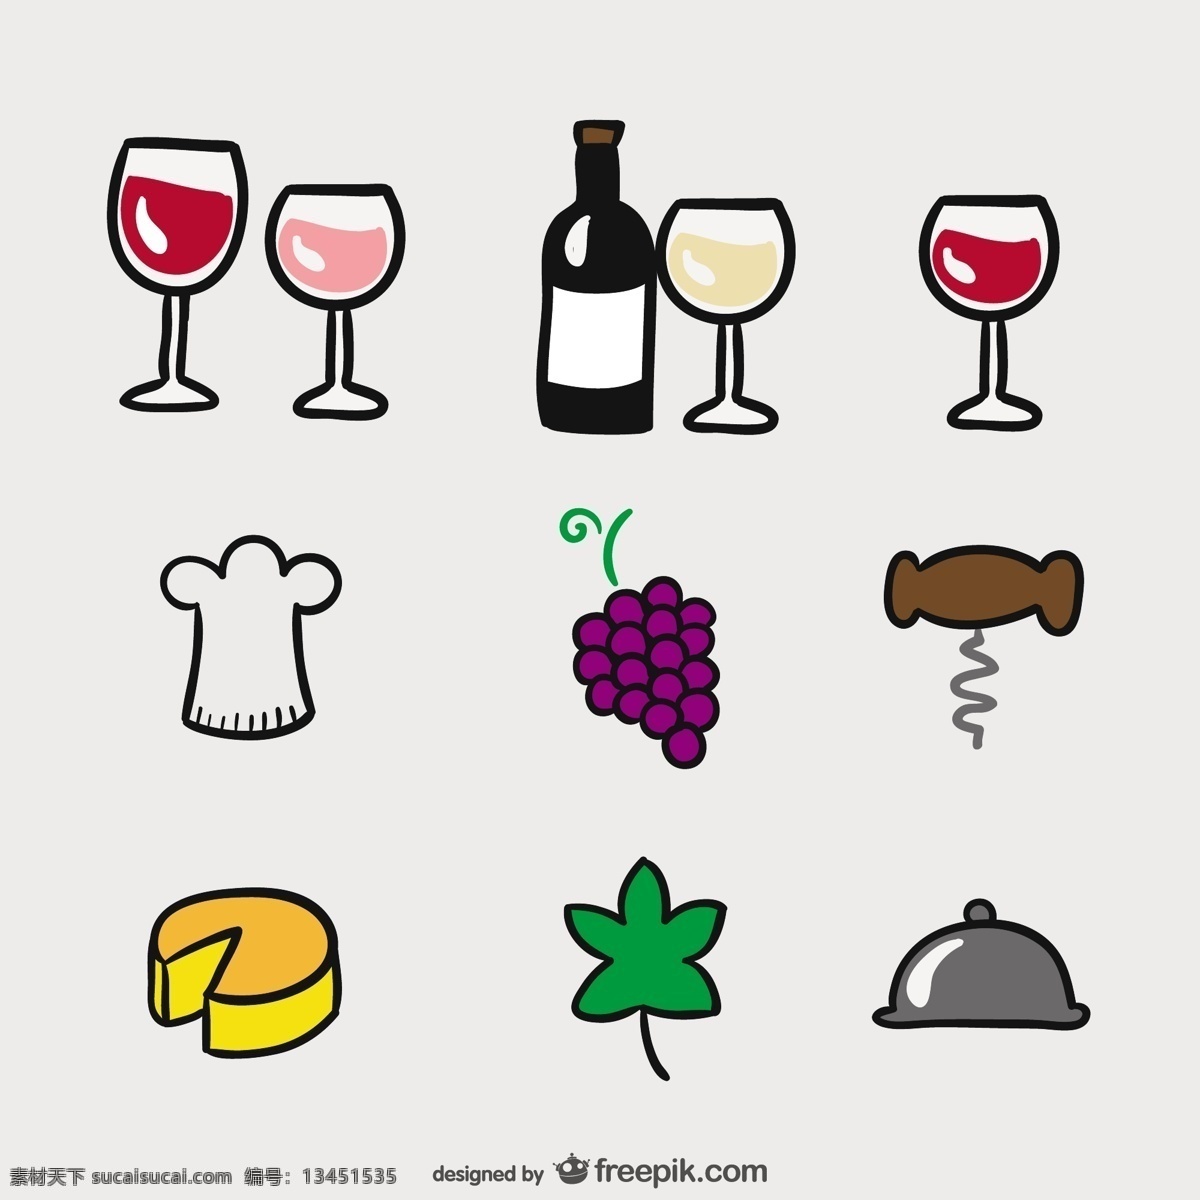 卡通偶像 图标 手 餐厅 葡萄酒 卡通 手画 眼镜 瓶子 玻璃 杯子 绘画 奶酪 元素 葡萄 葡萄酒酒杯 葡萄酒瓶 手图标 图标集 白色